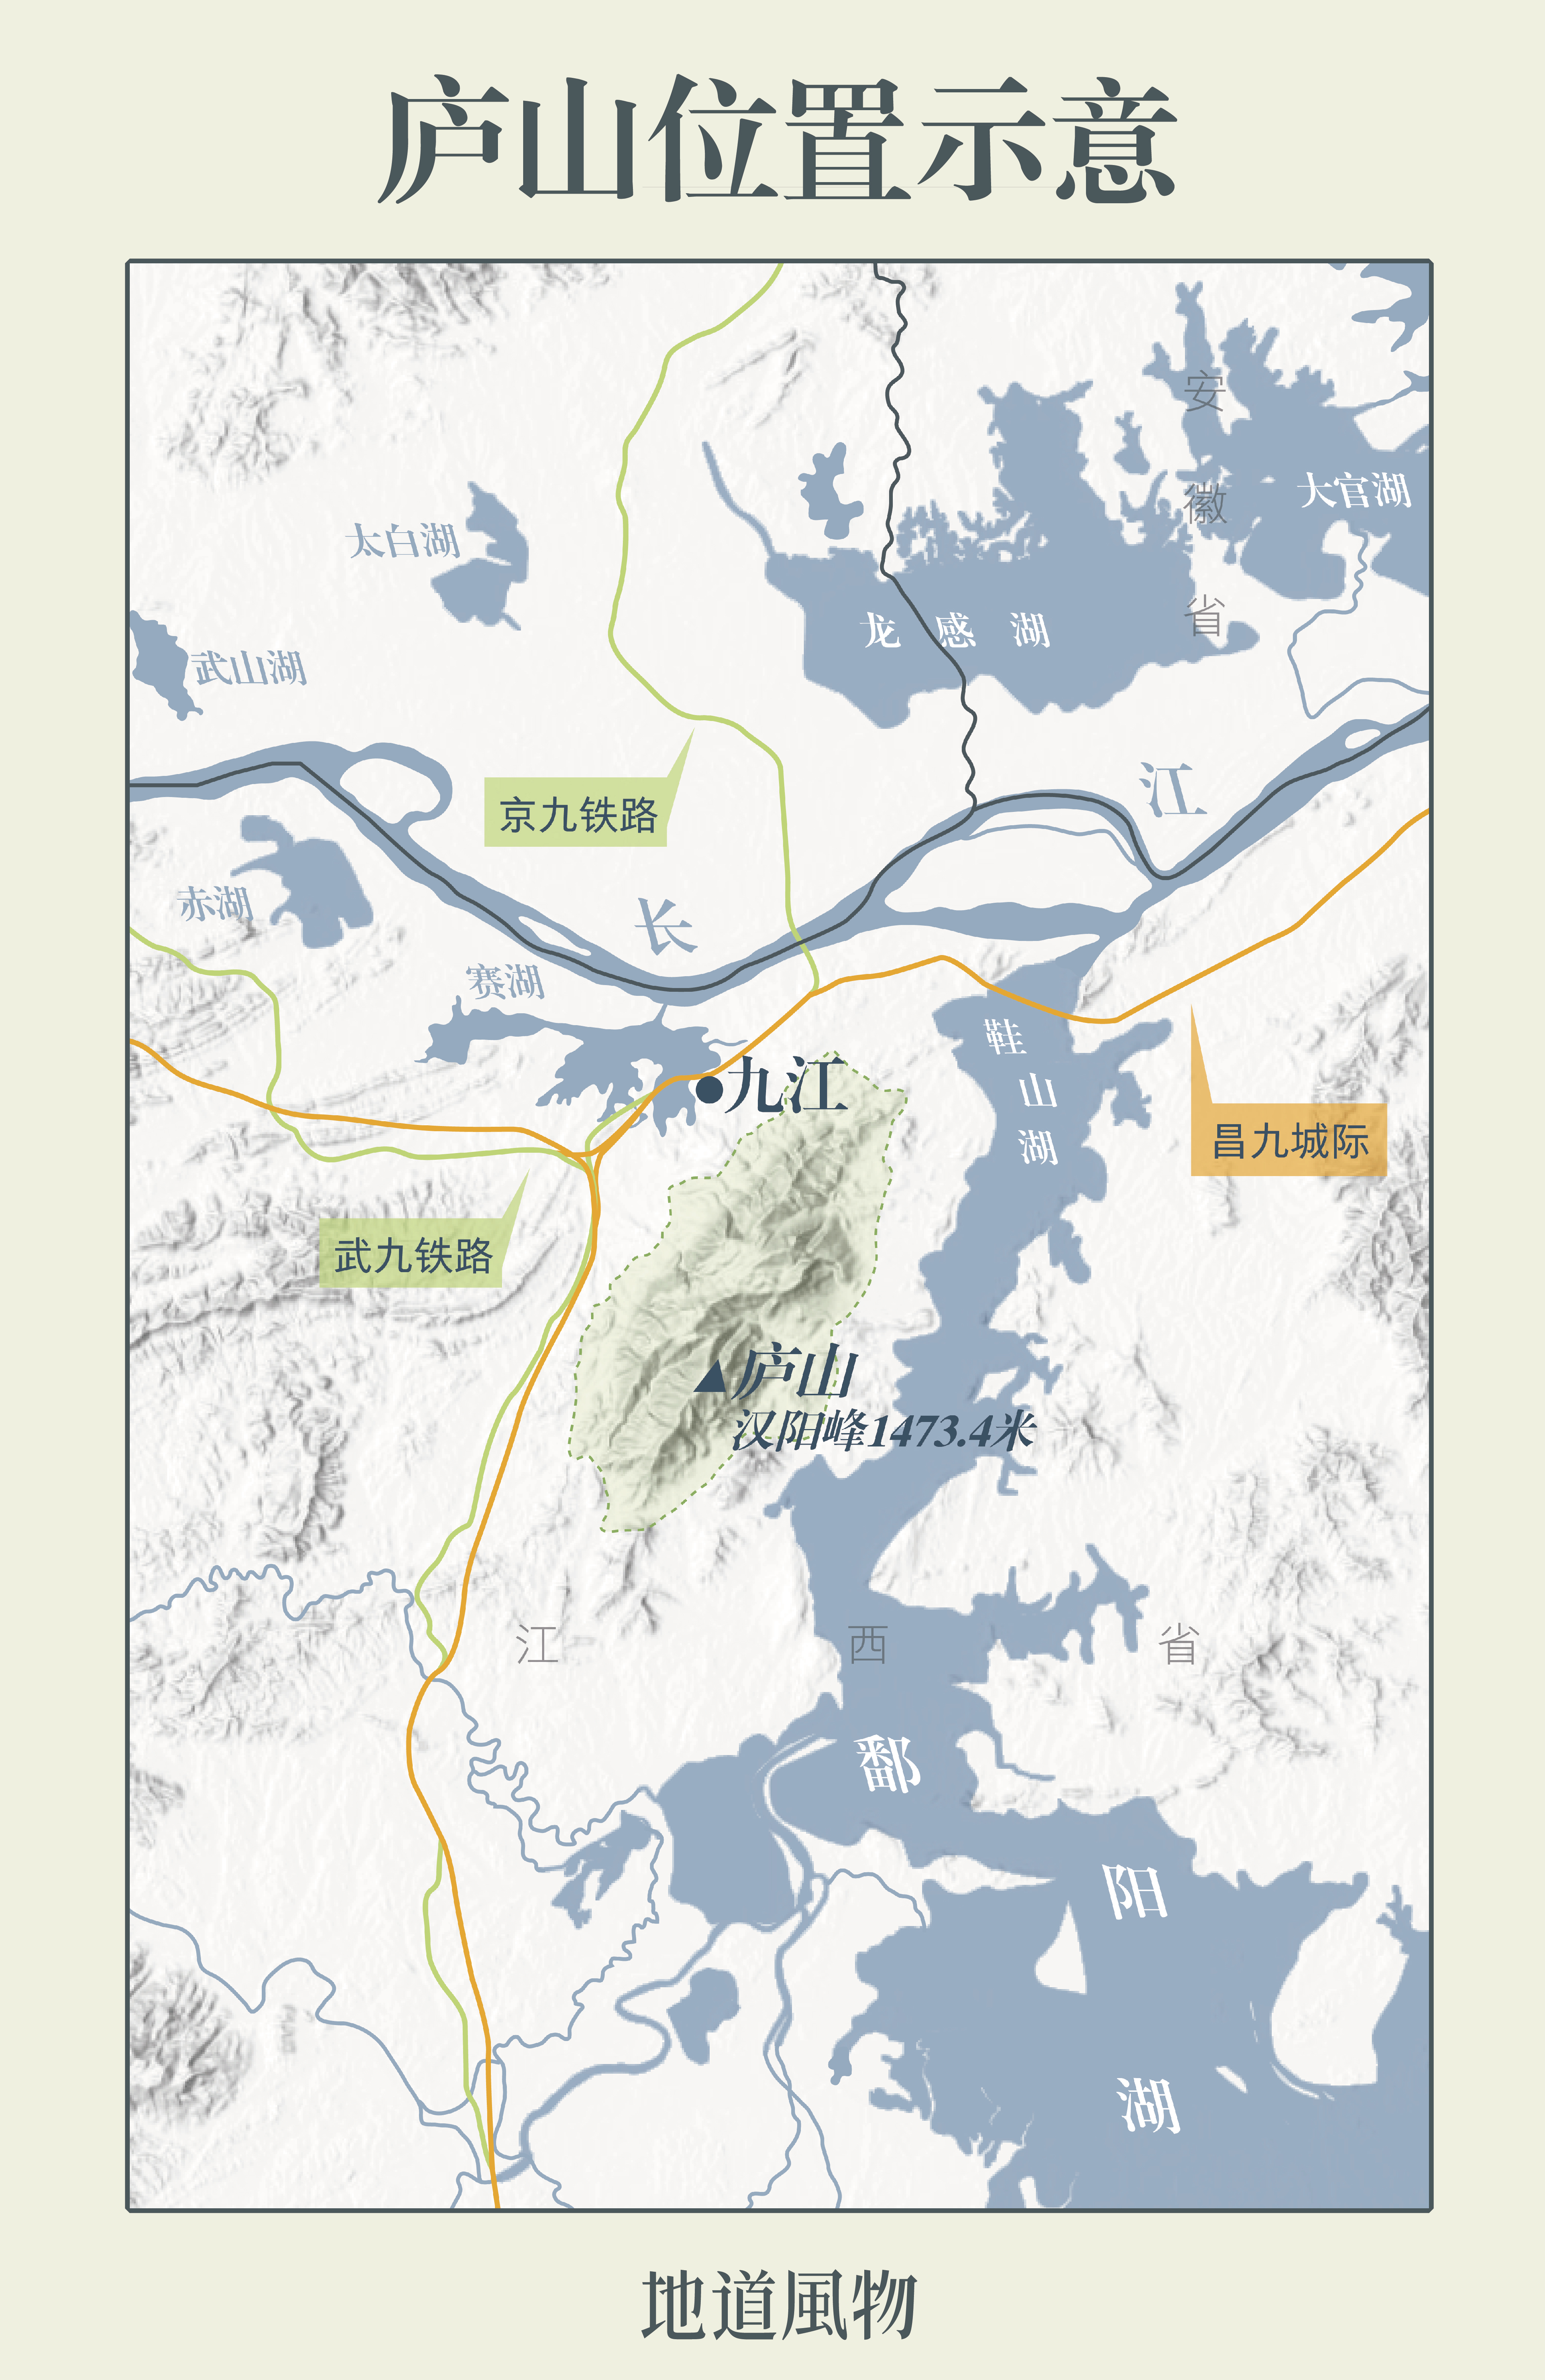 星子县地图图片